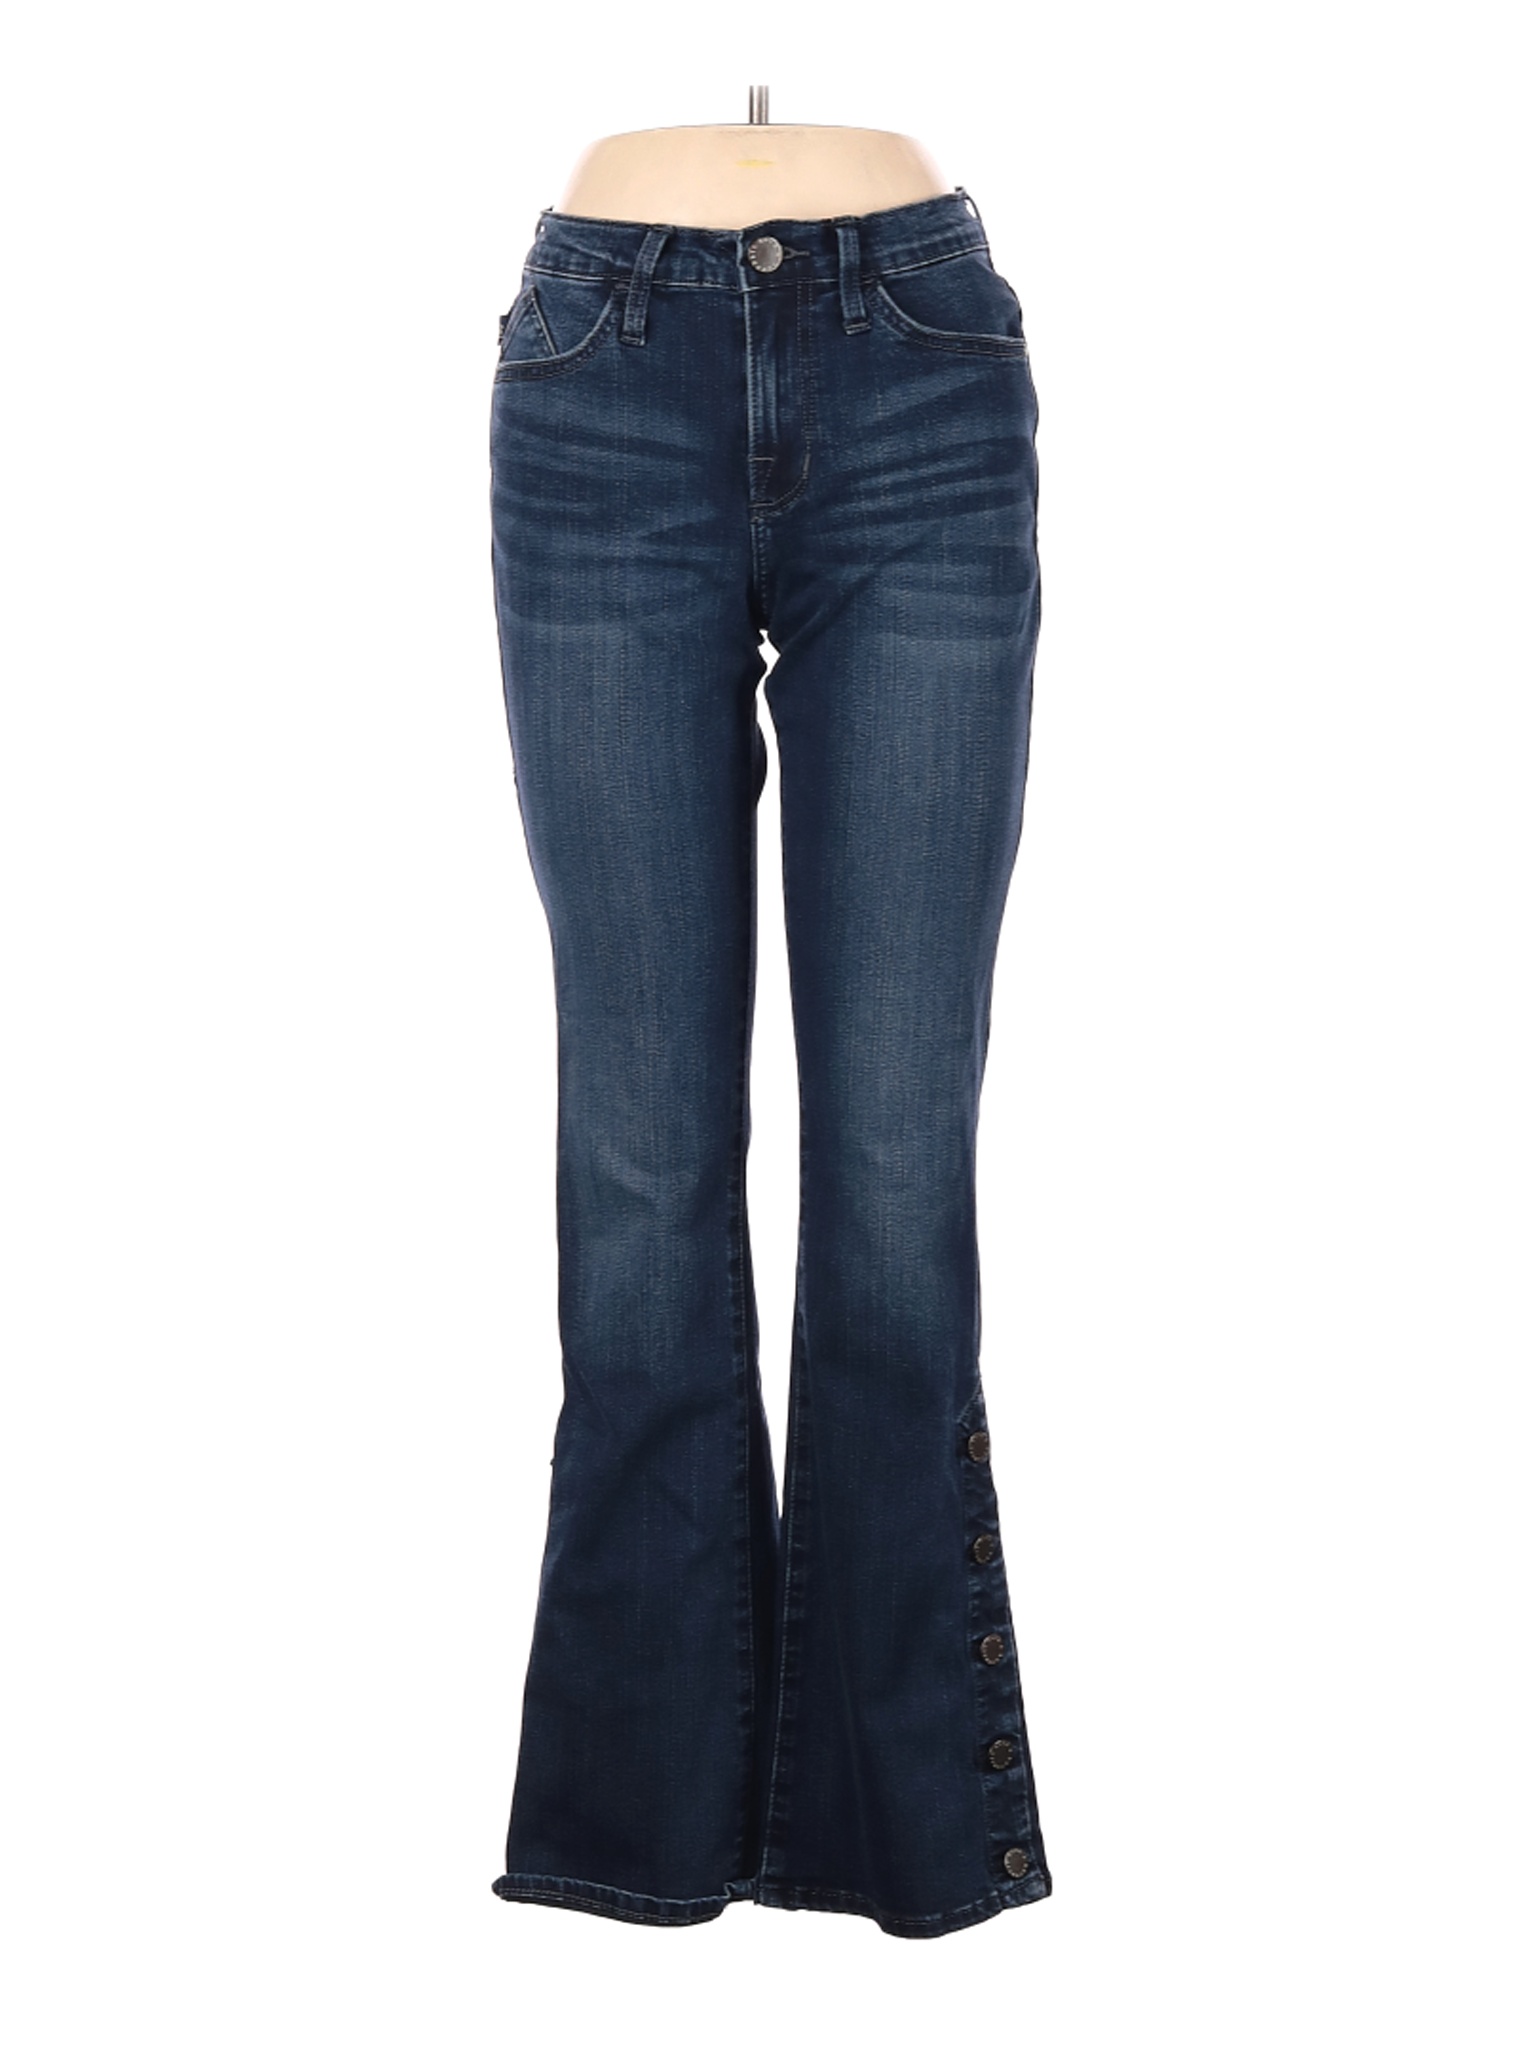 Rock & Republic Women Blue Jeans 8 | eBay